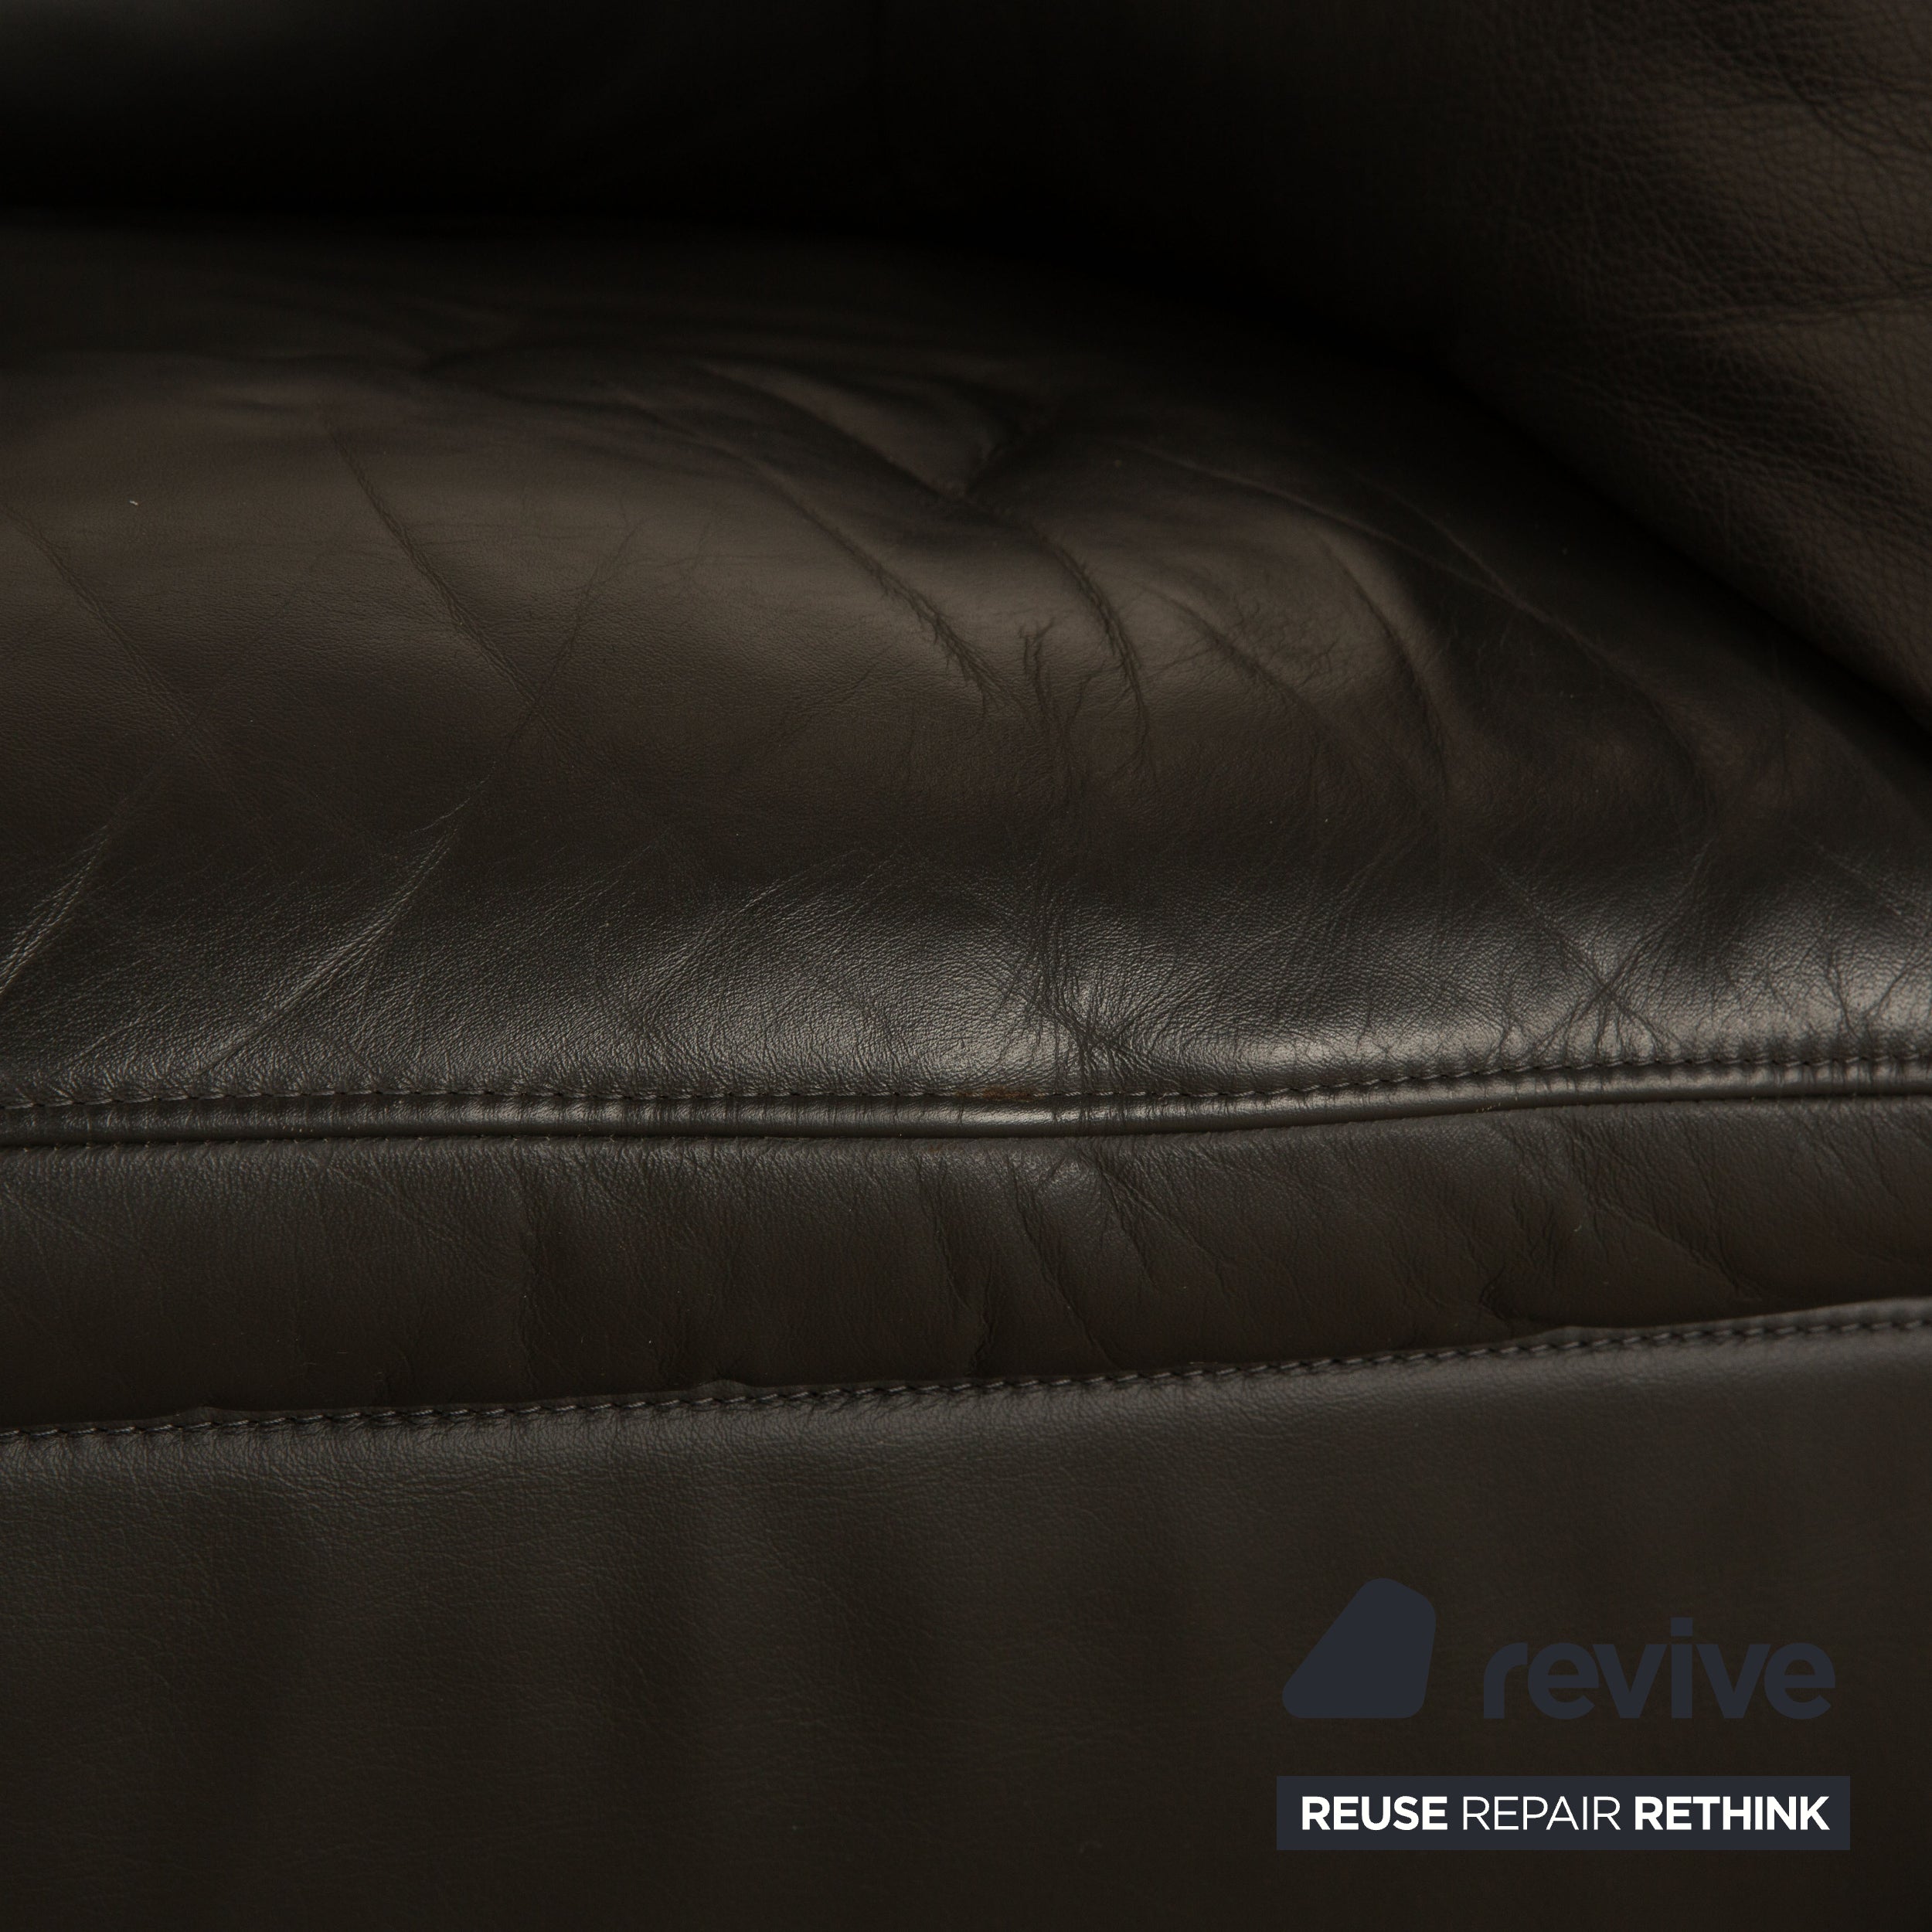 Rolf Benz 5600 leather armchair anthracite dark grey